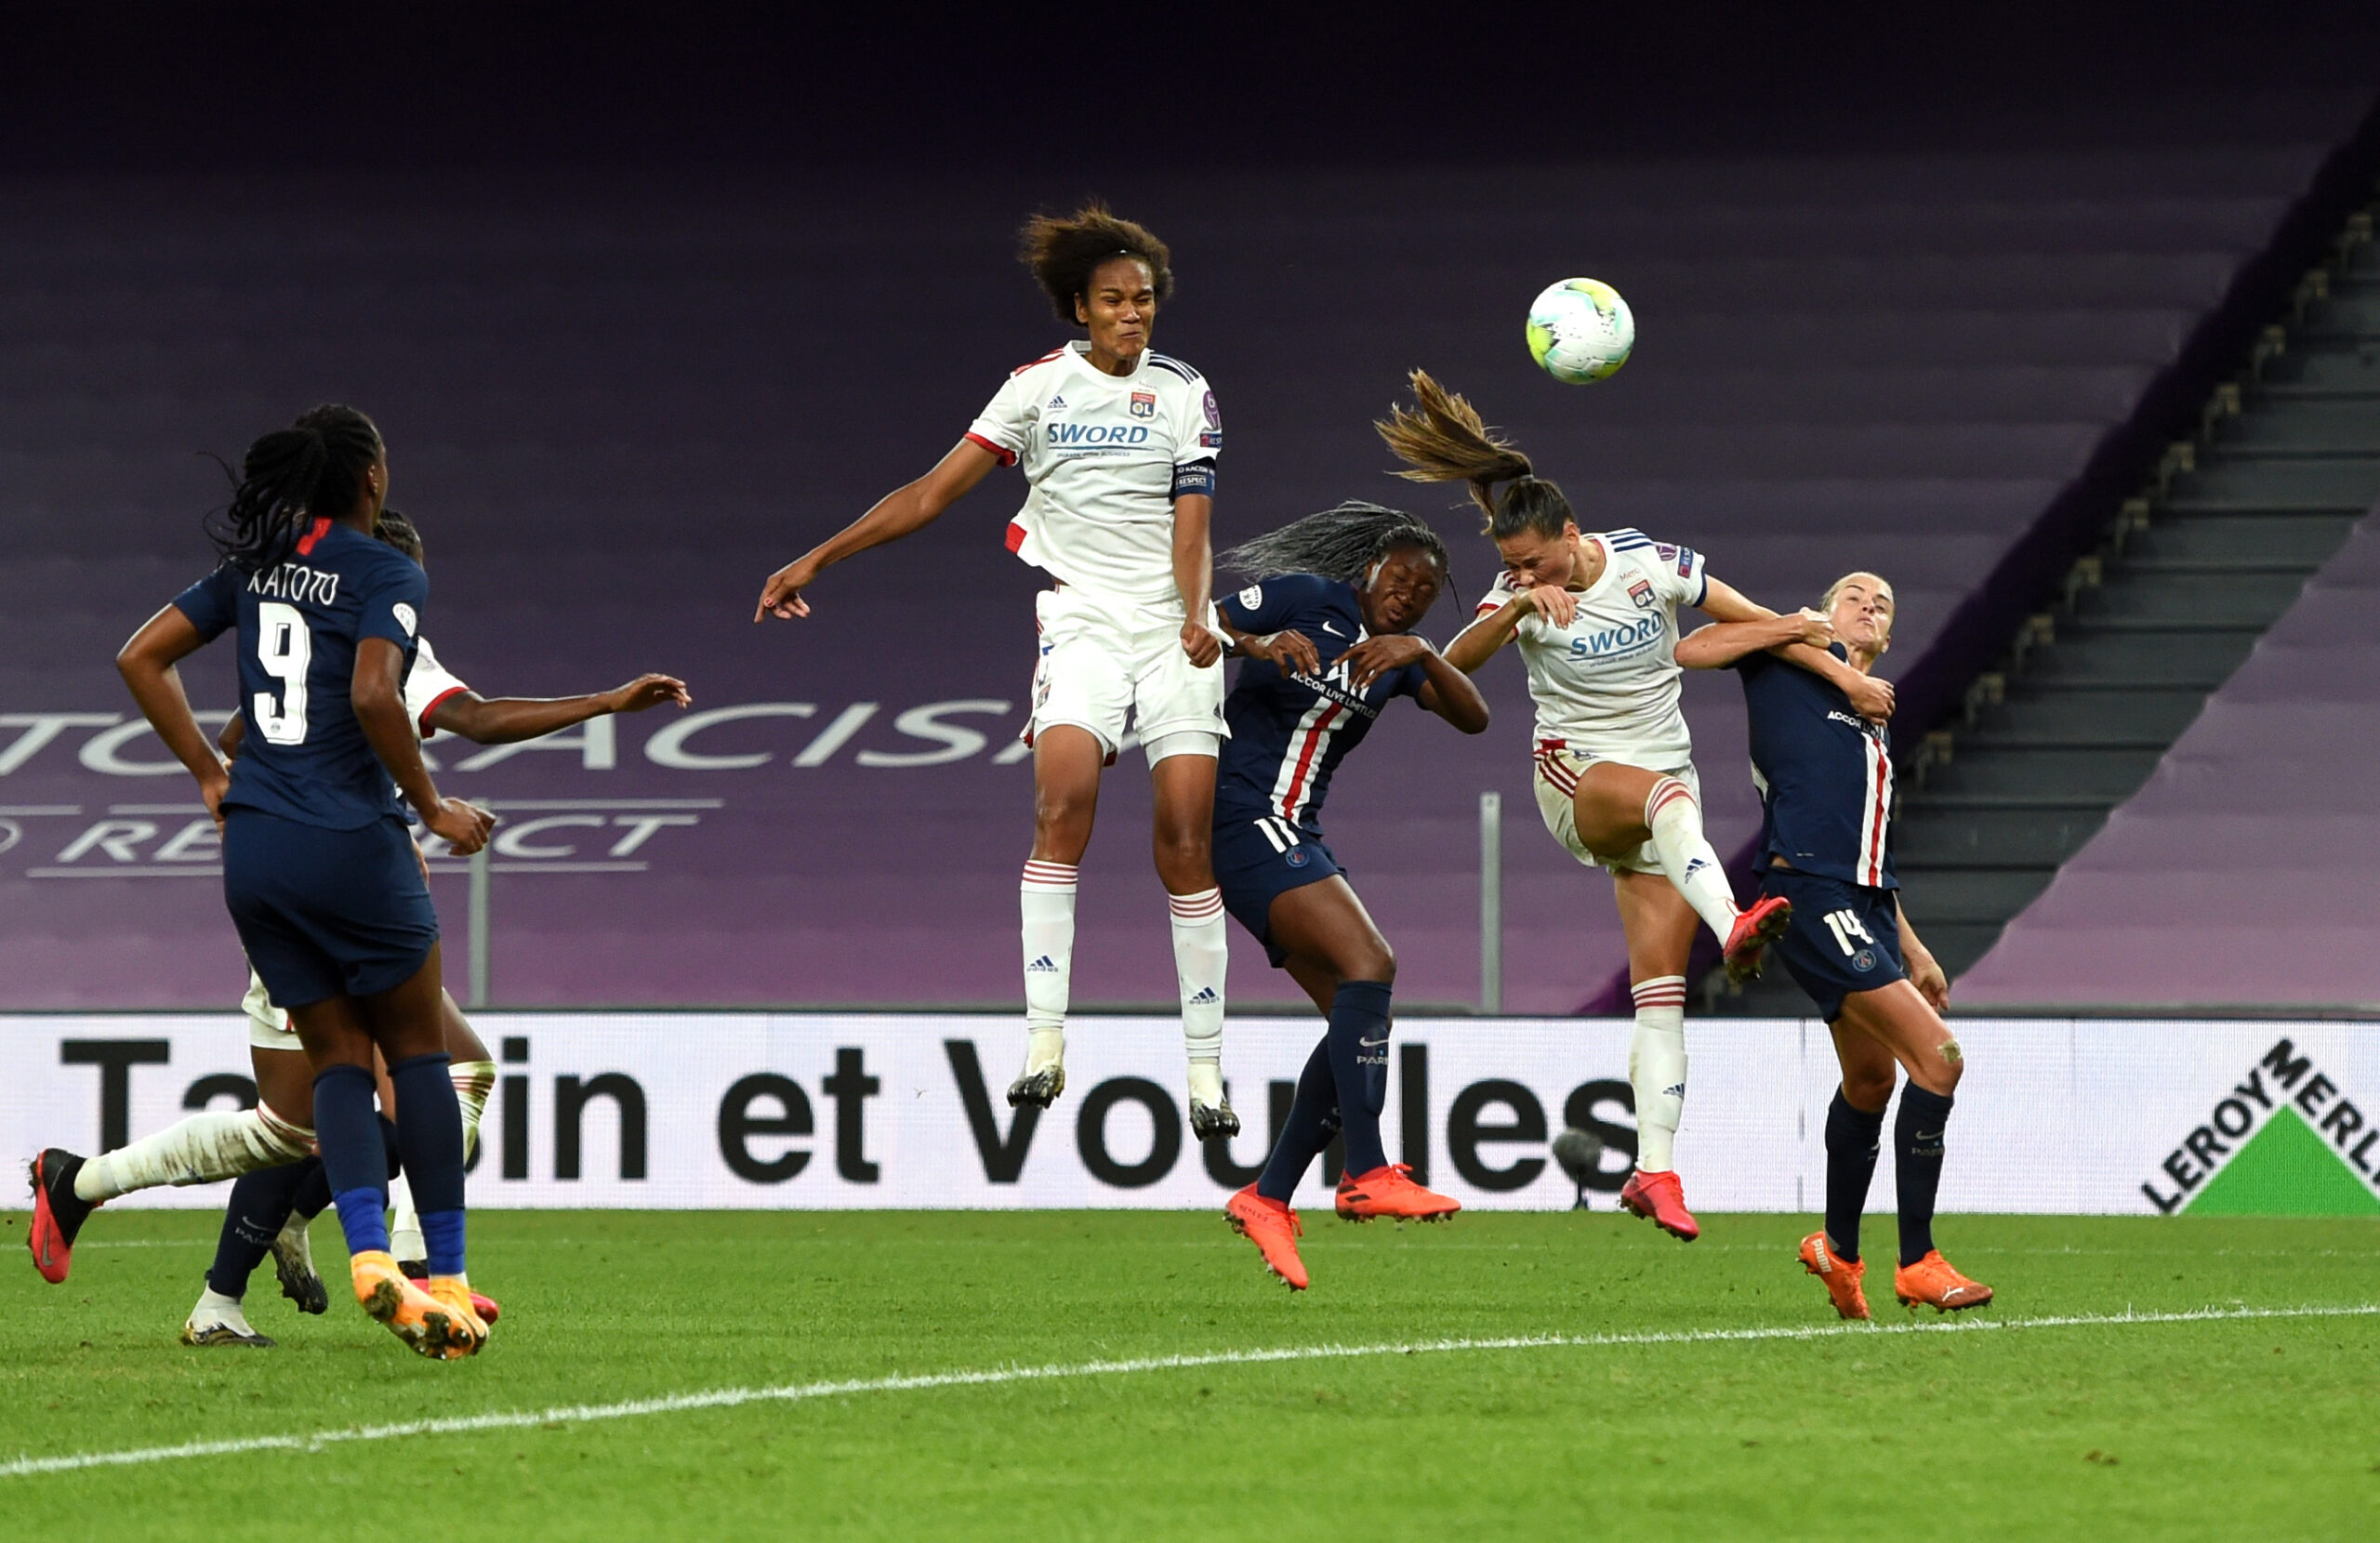 L'équipe féminine du PSG se qualifie pour les quarts de finale de LDC  malgré une défaite sur tapis vert - Football